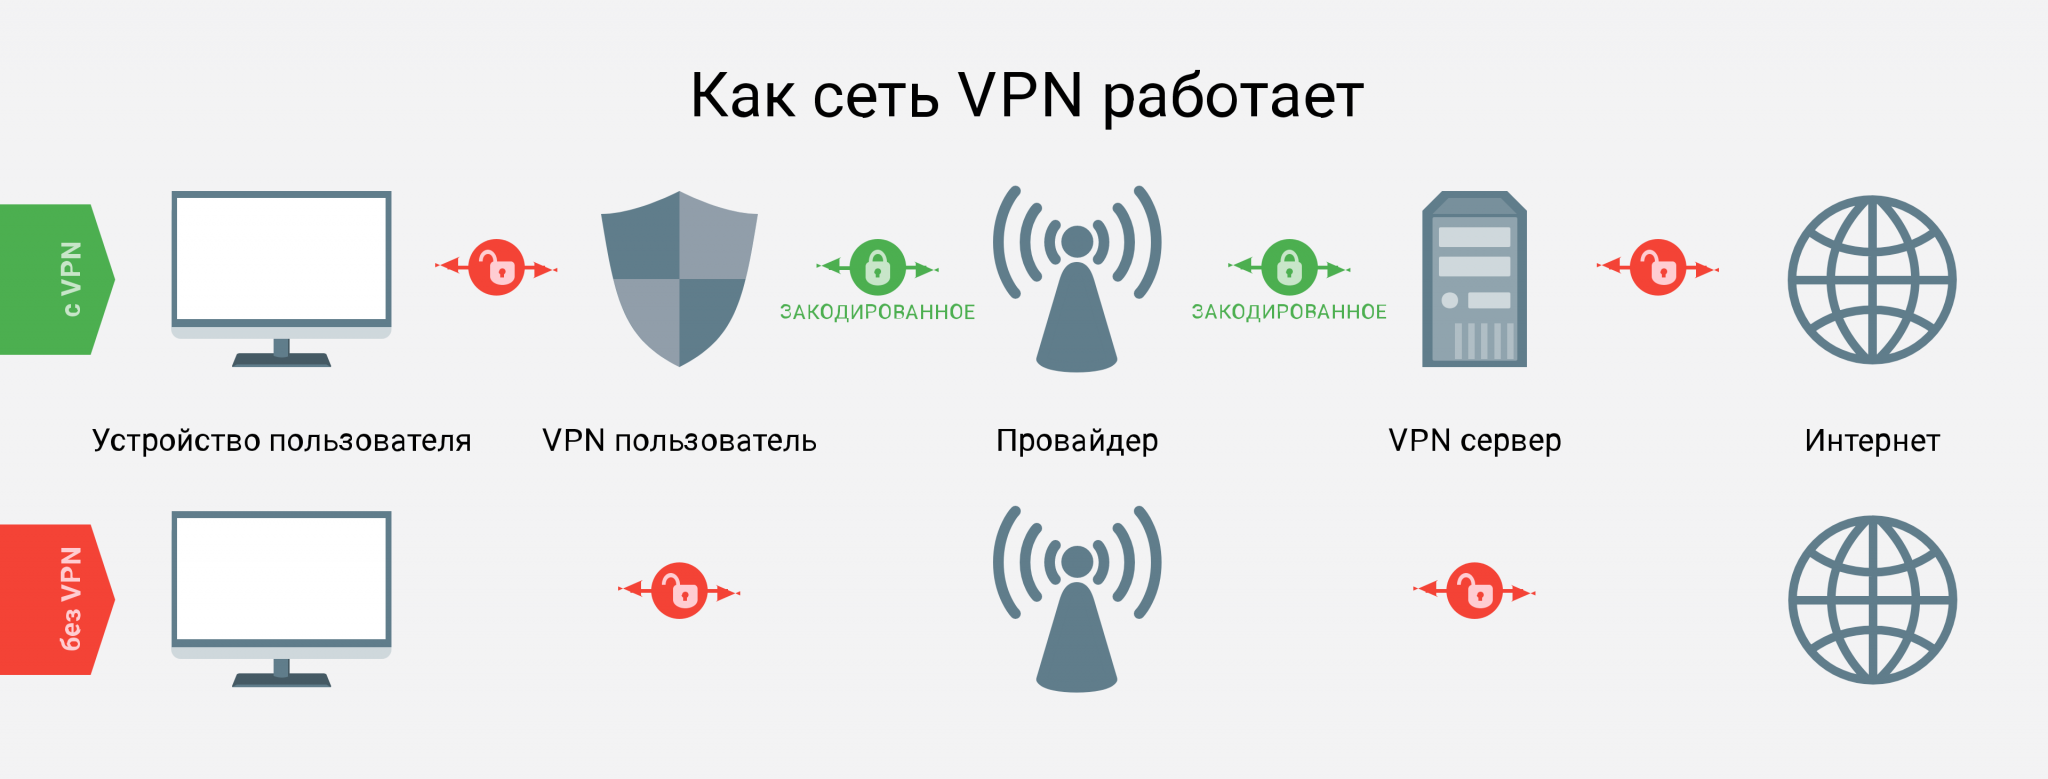 Https vpn net. Схема работы впн. Как работает впн. VPN сервисы. VPN обход блокировки.